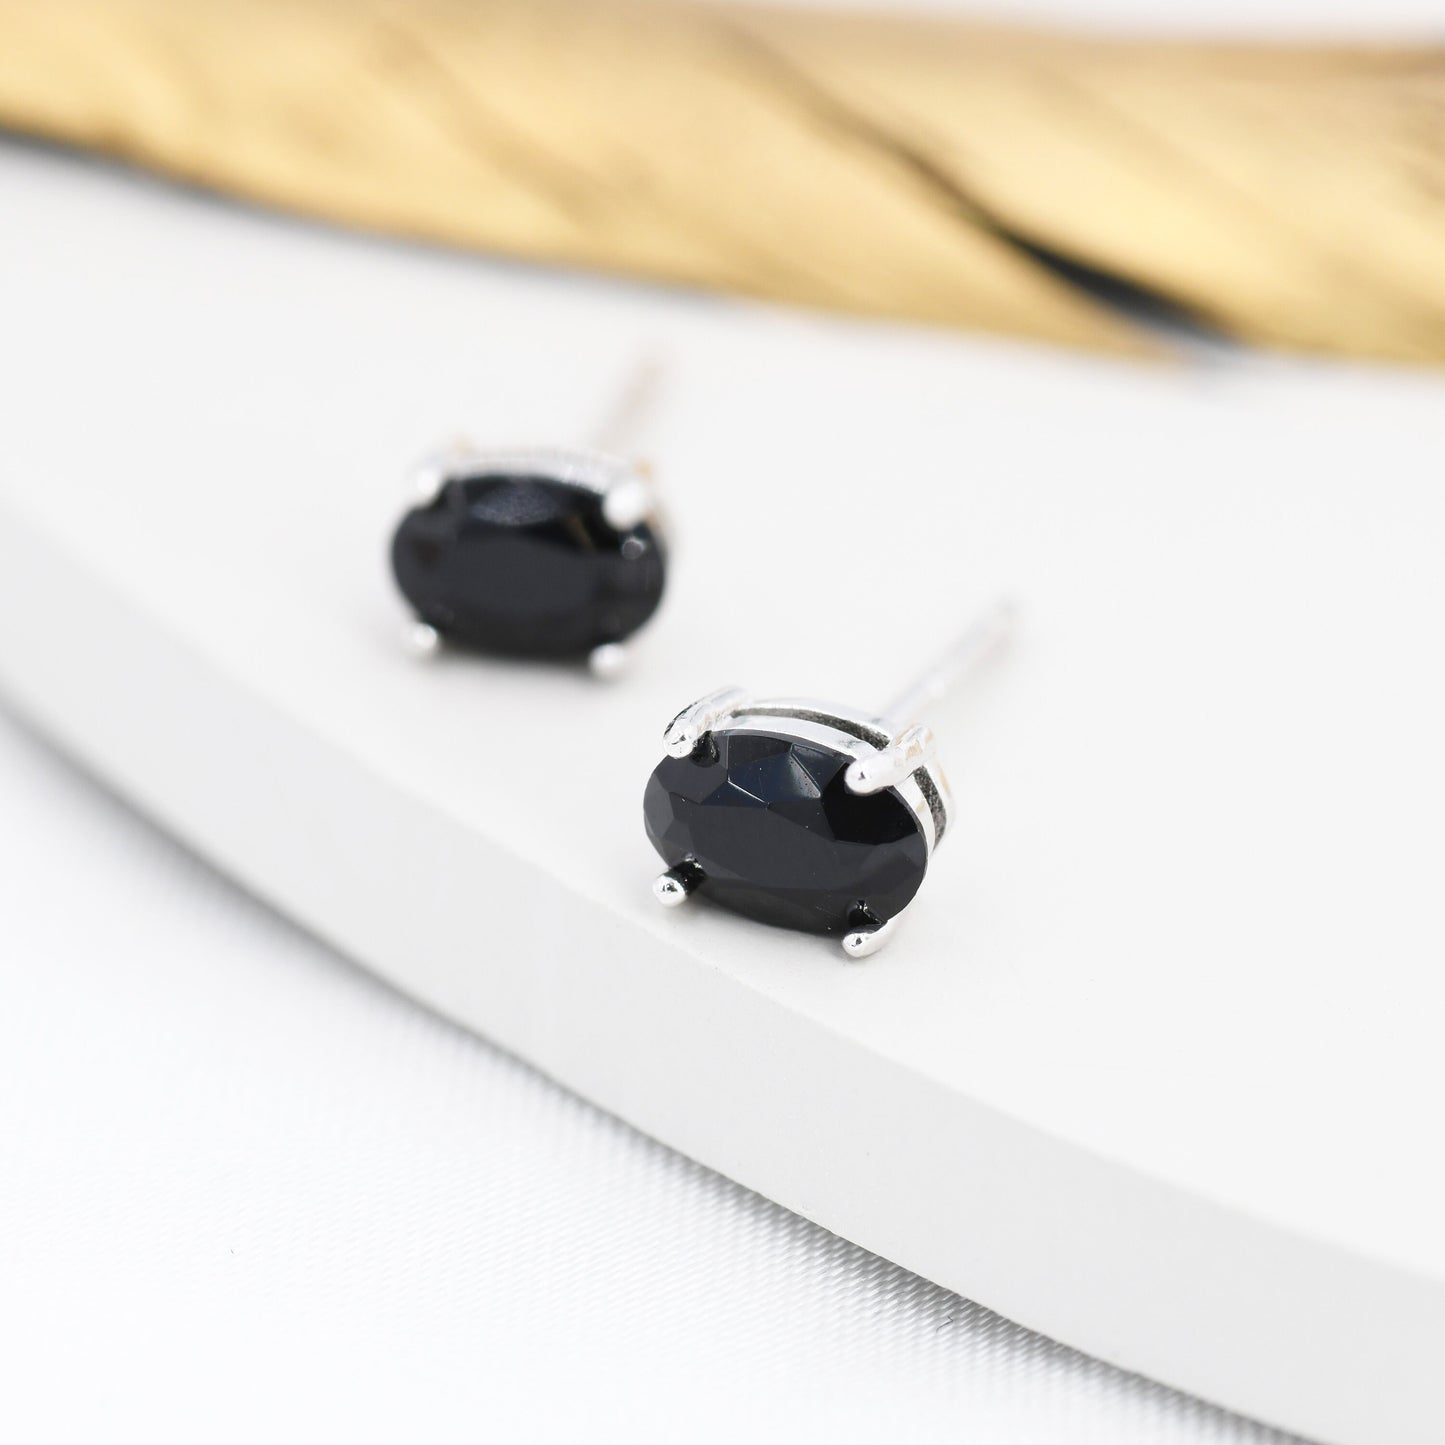 Genuine Black Onyx Oval Stud Earrings in Sterling Silver, Natural Oval Black Onyx Crystal Earrings